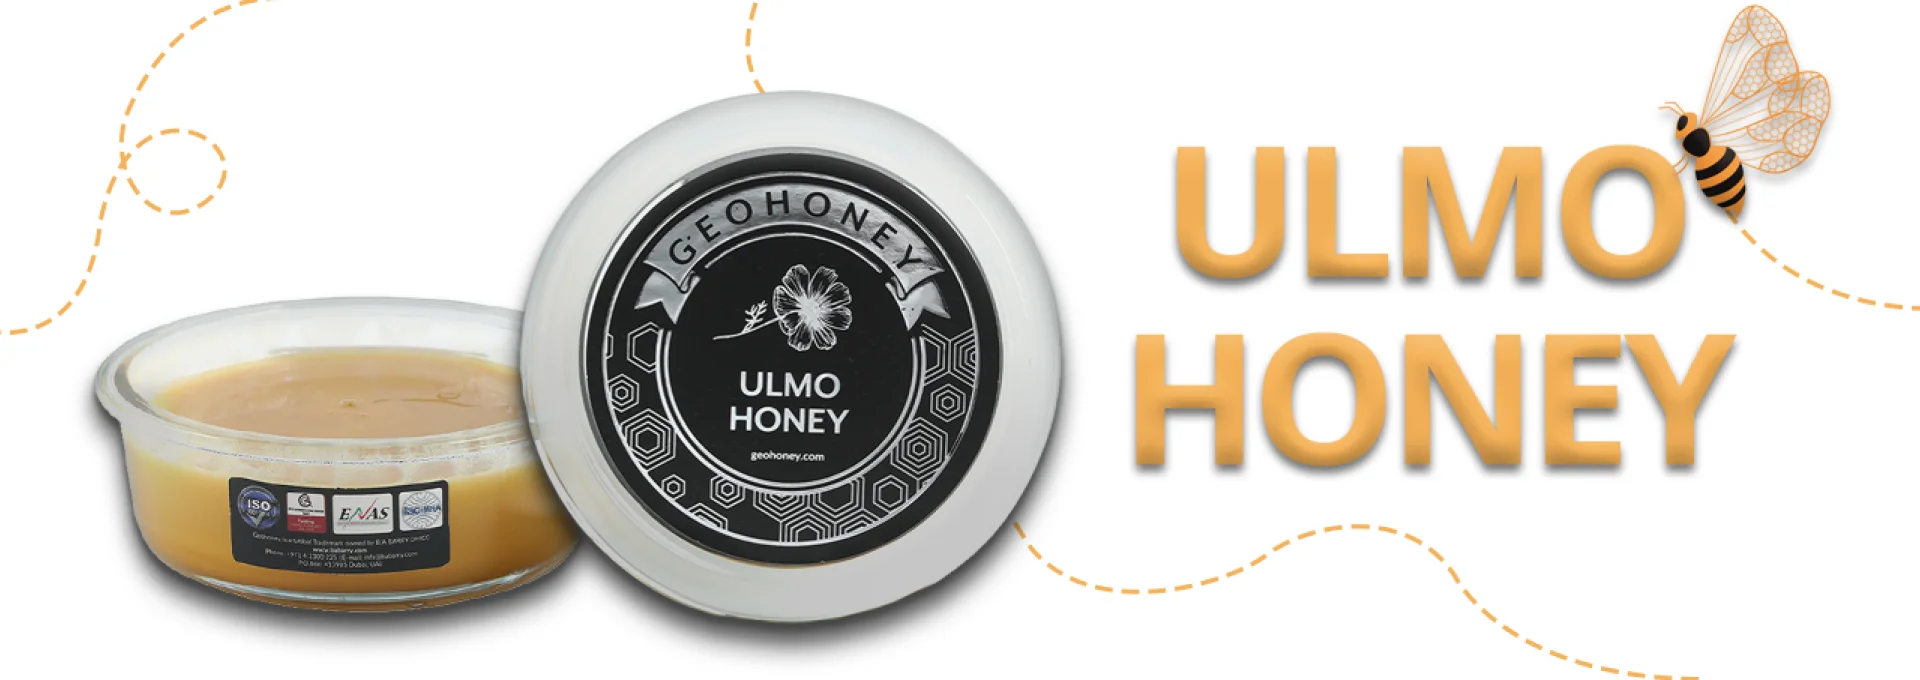 Ulmo honey banner